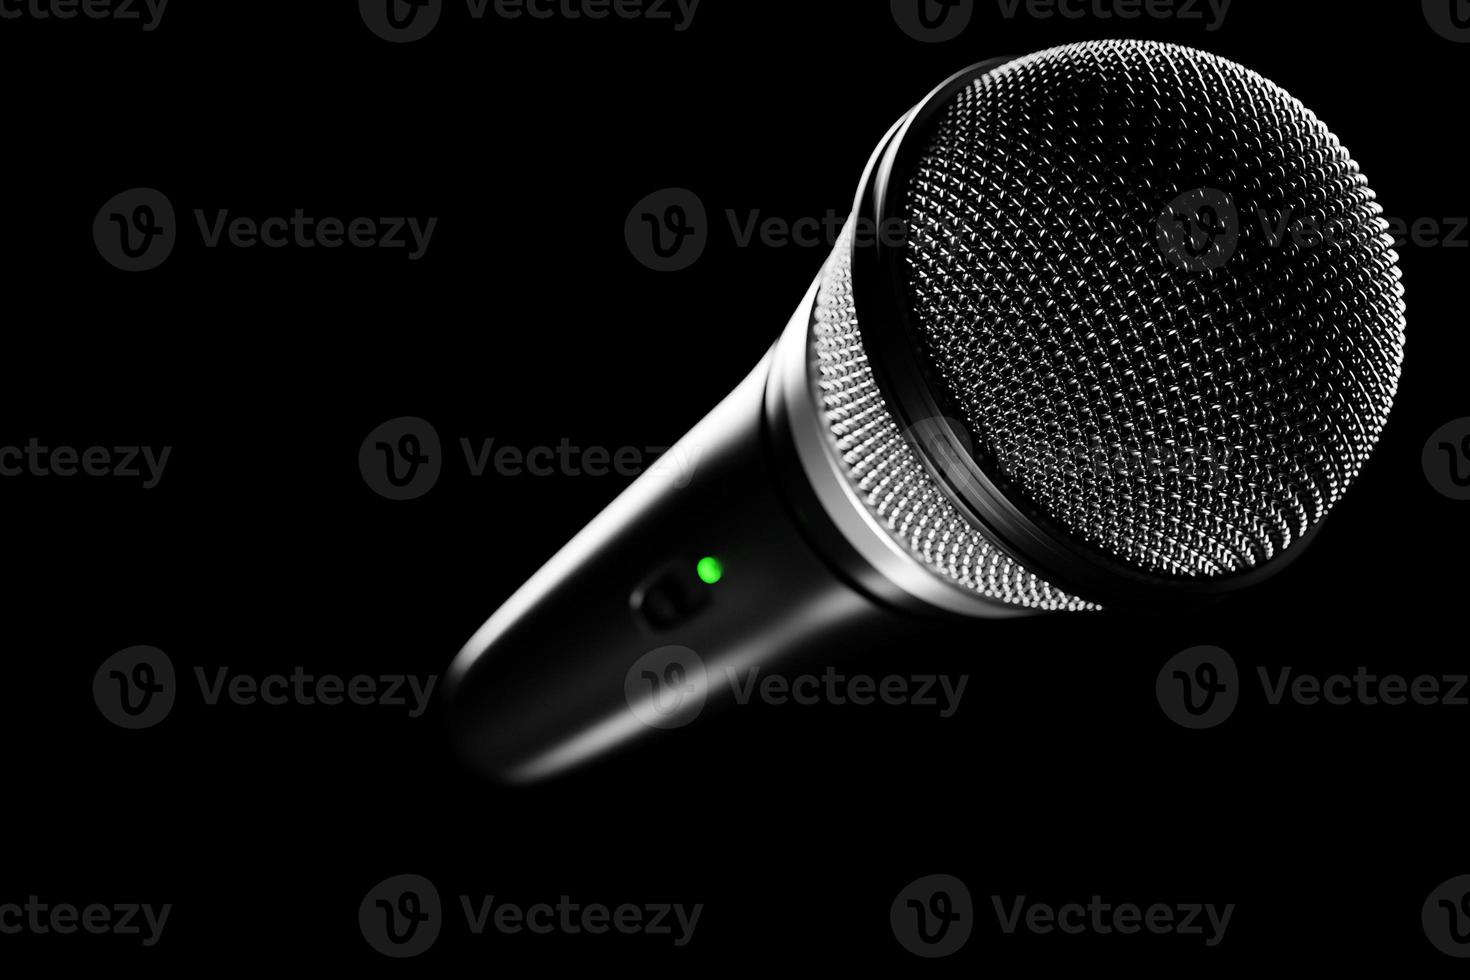 mikrofon, rundes formmodell, realistische 3d-illustration. Musikpreis, Karaoke, Radio- und Tonstudio-Tongeräte foto